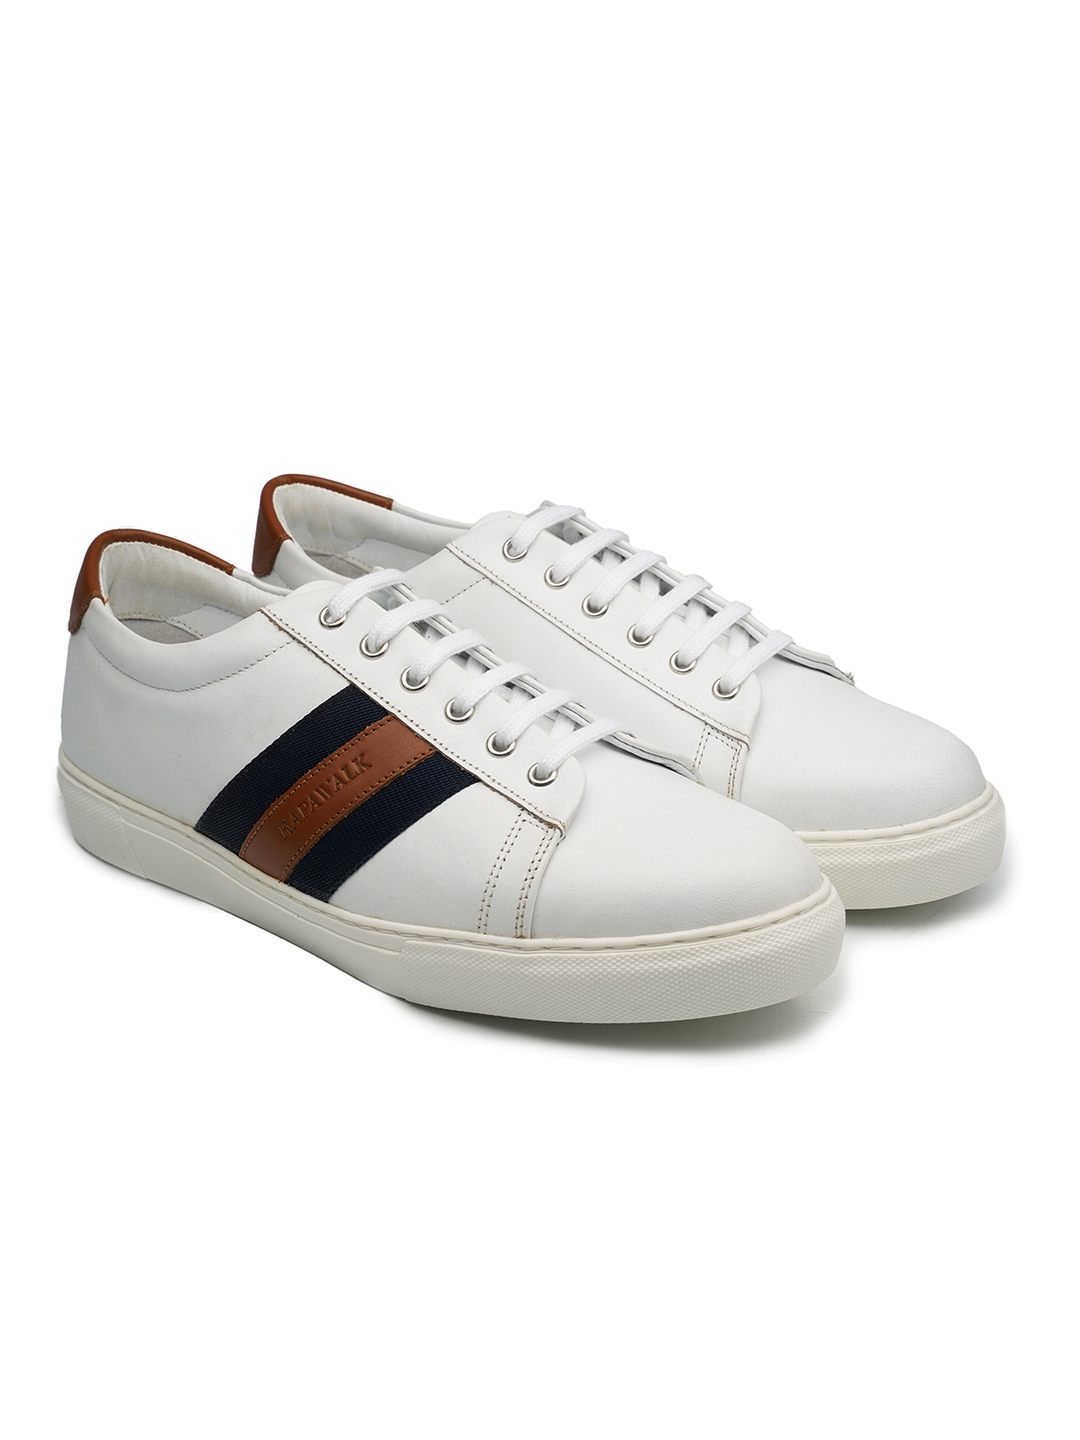 Eashery Running Shoes For Mens Men's Classic,Heritage Sneaker White 11 -  Walmart.com